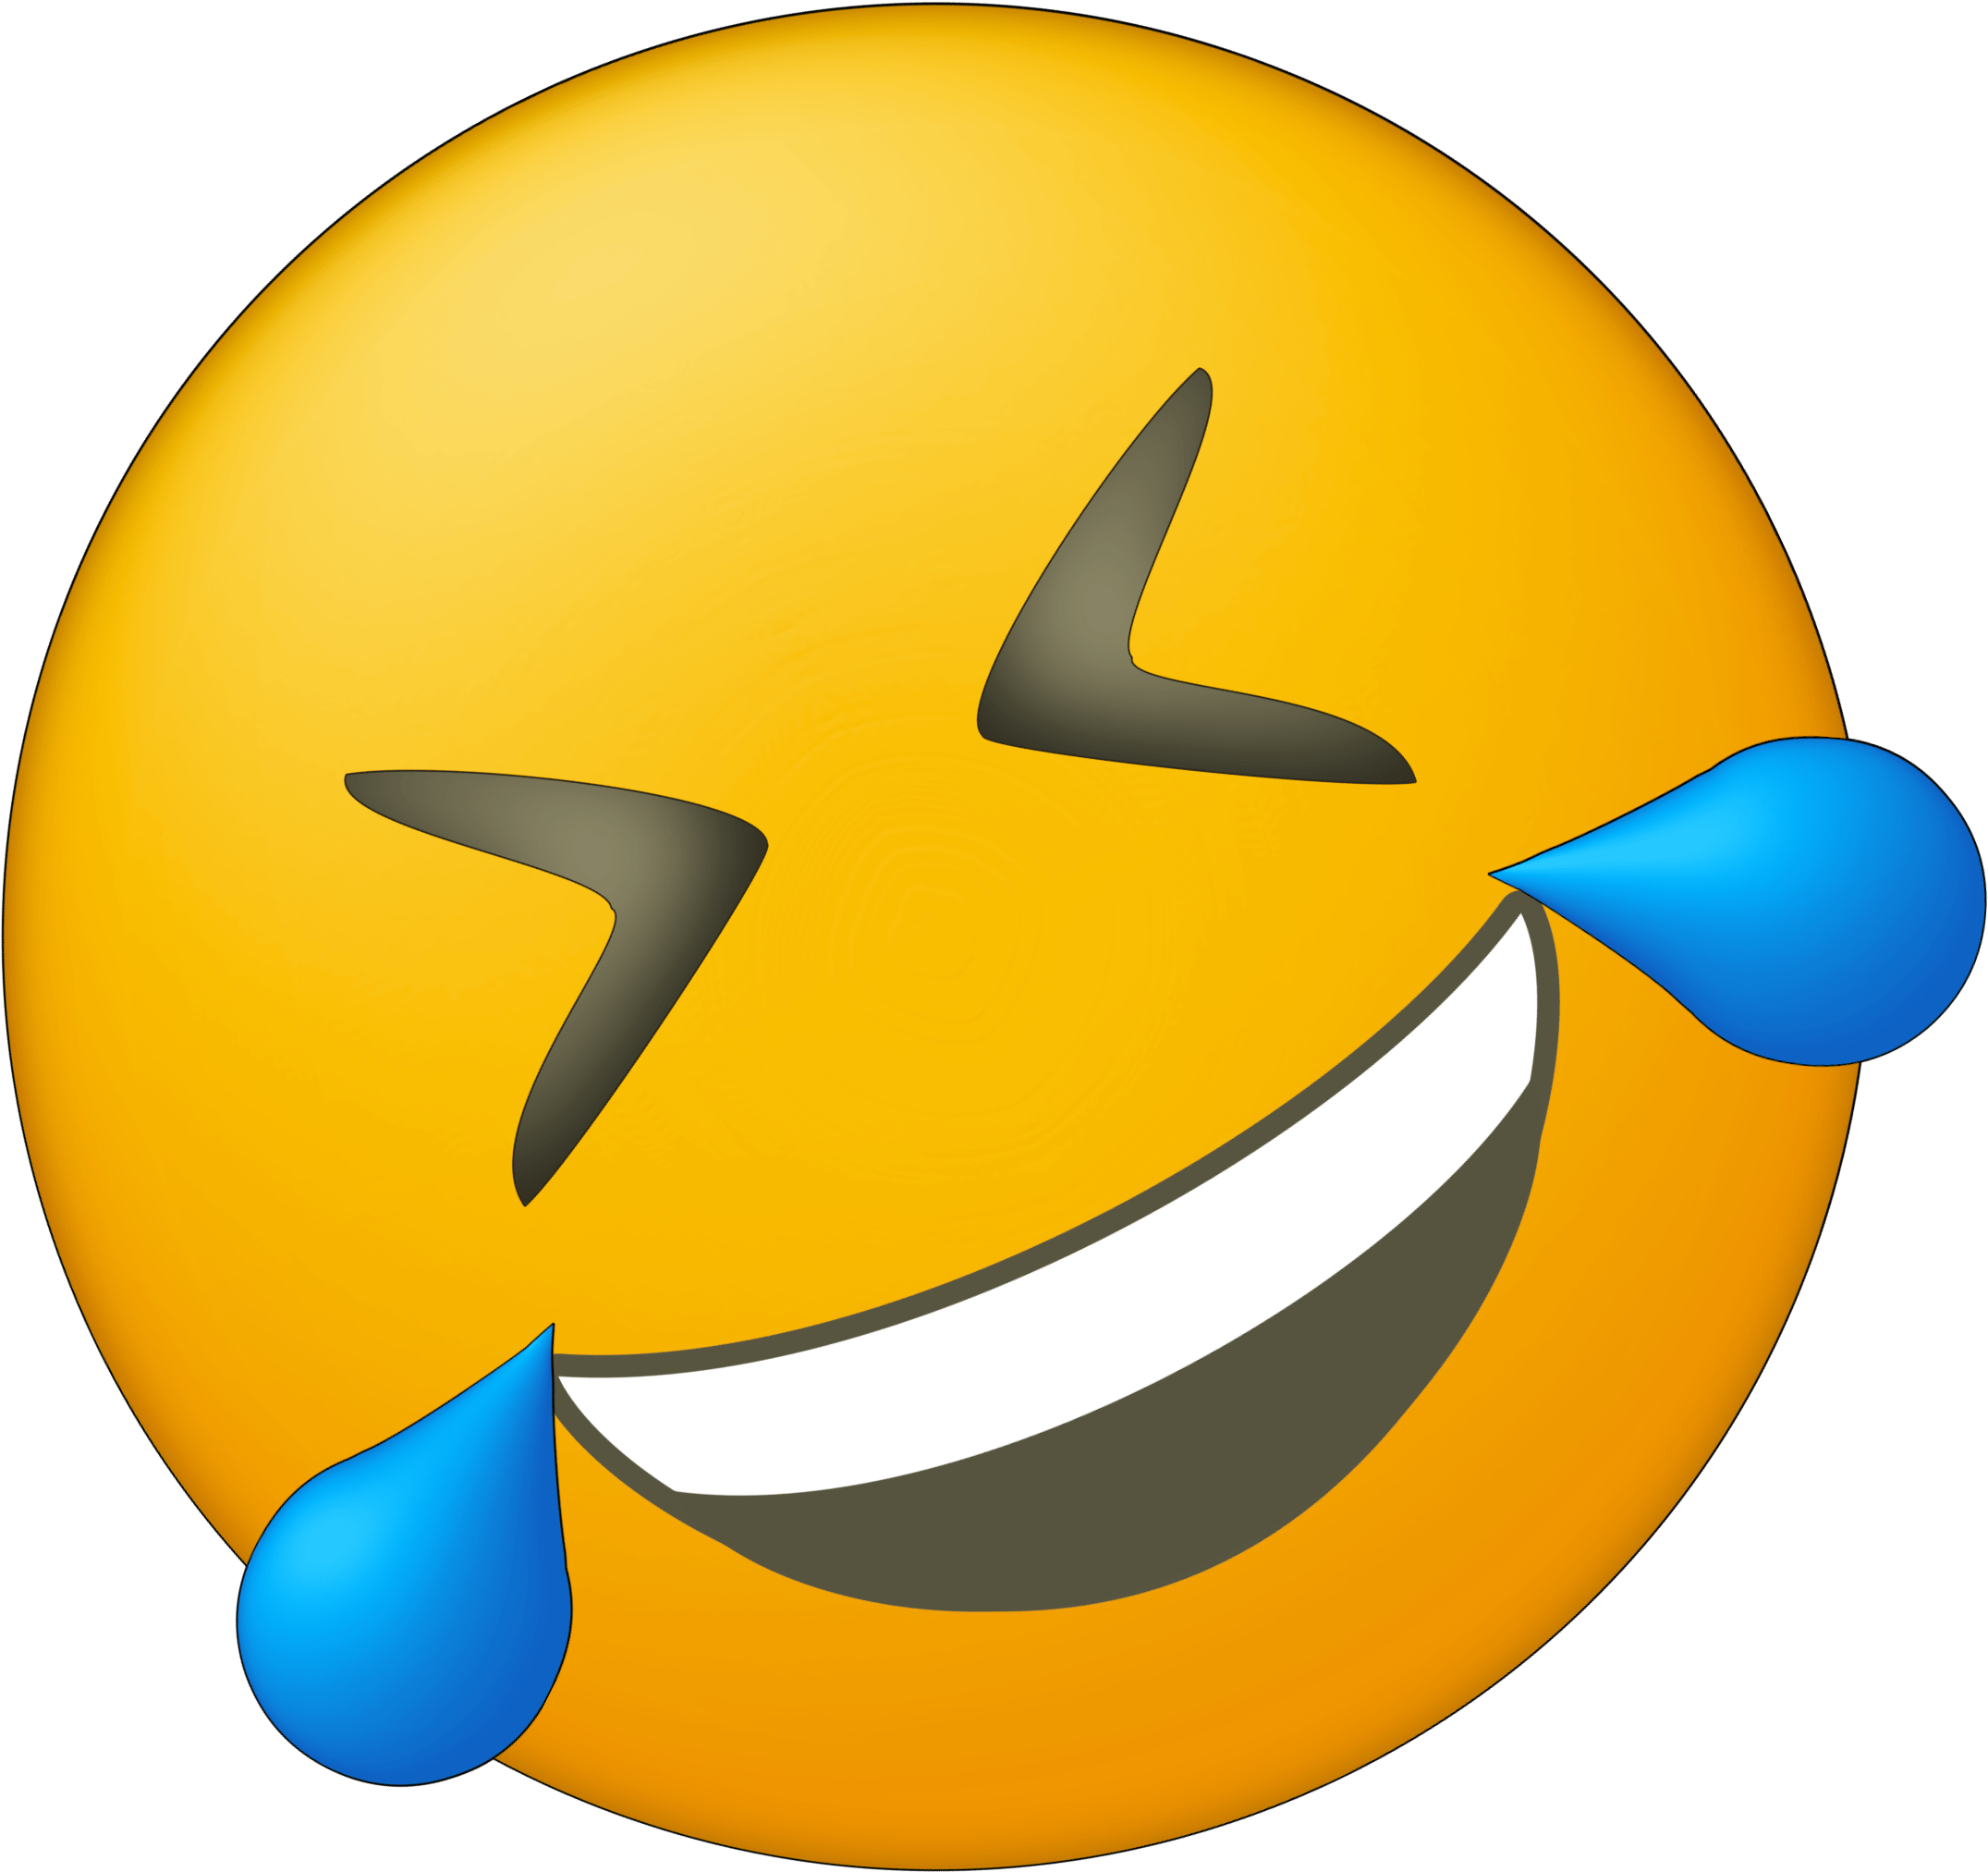 Download PNG image - Laughing Crying Emoji PNG Pic 